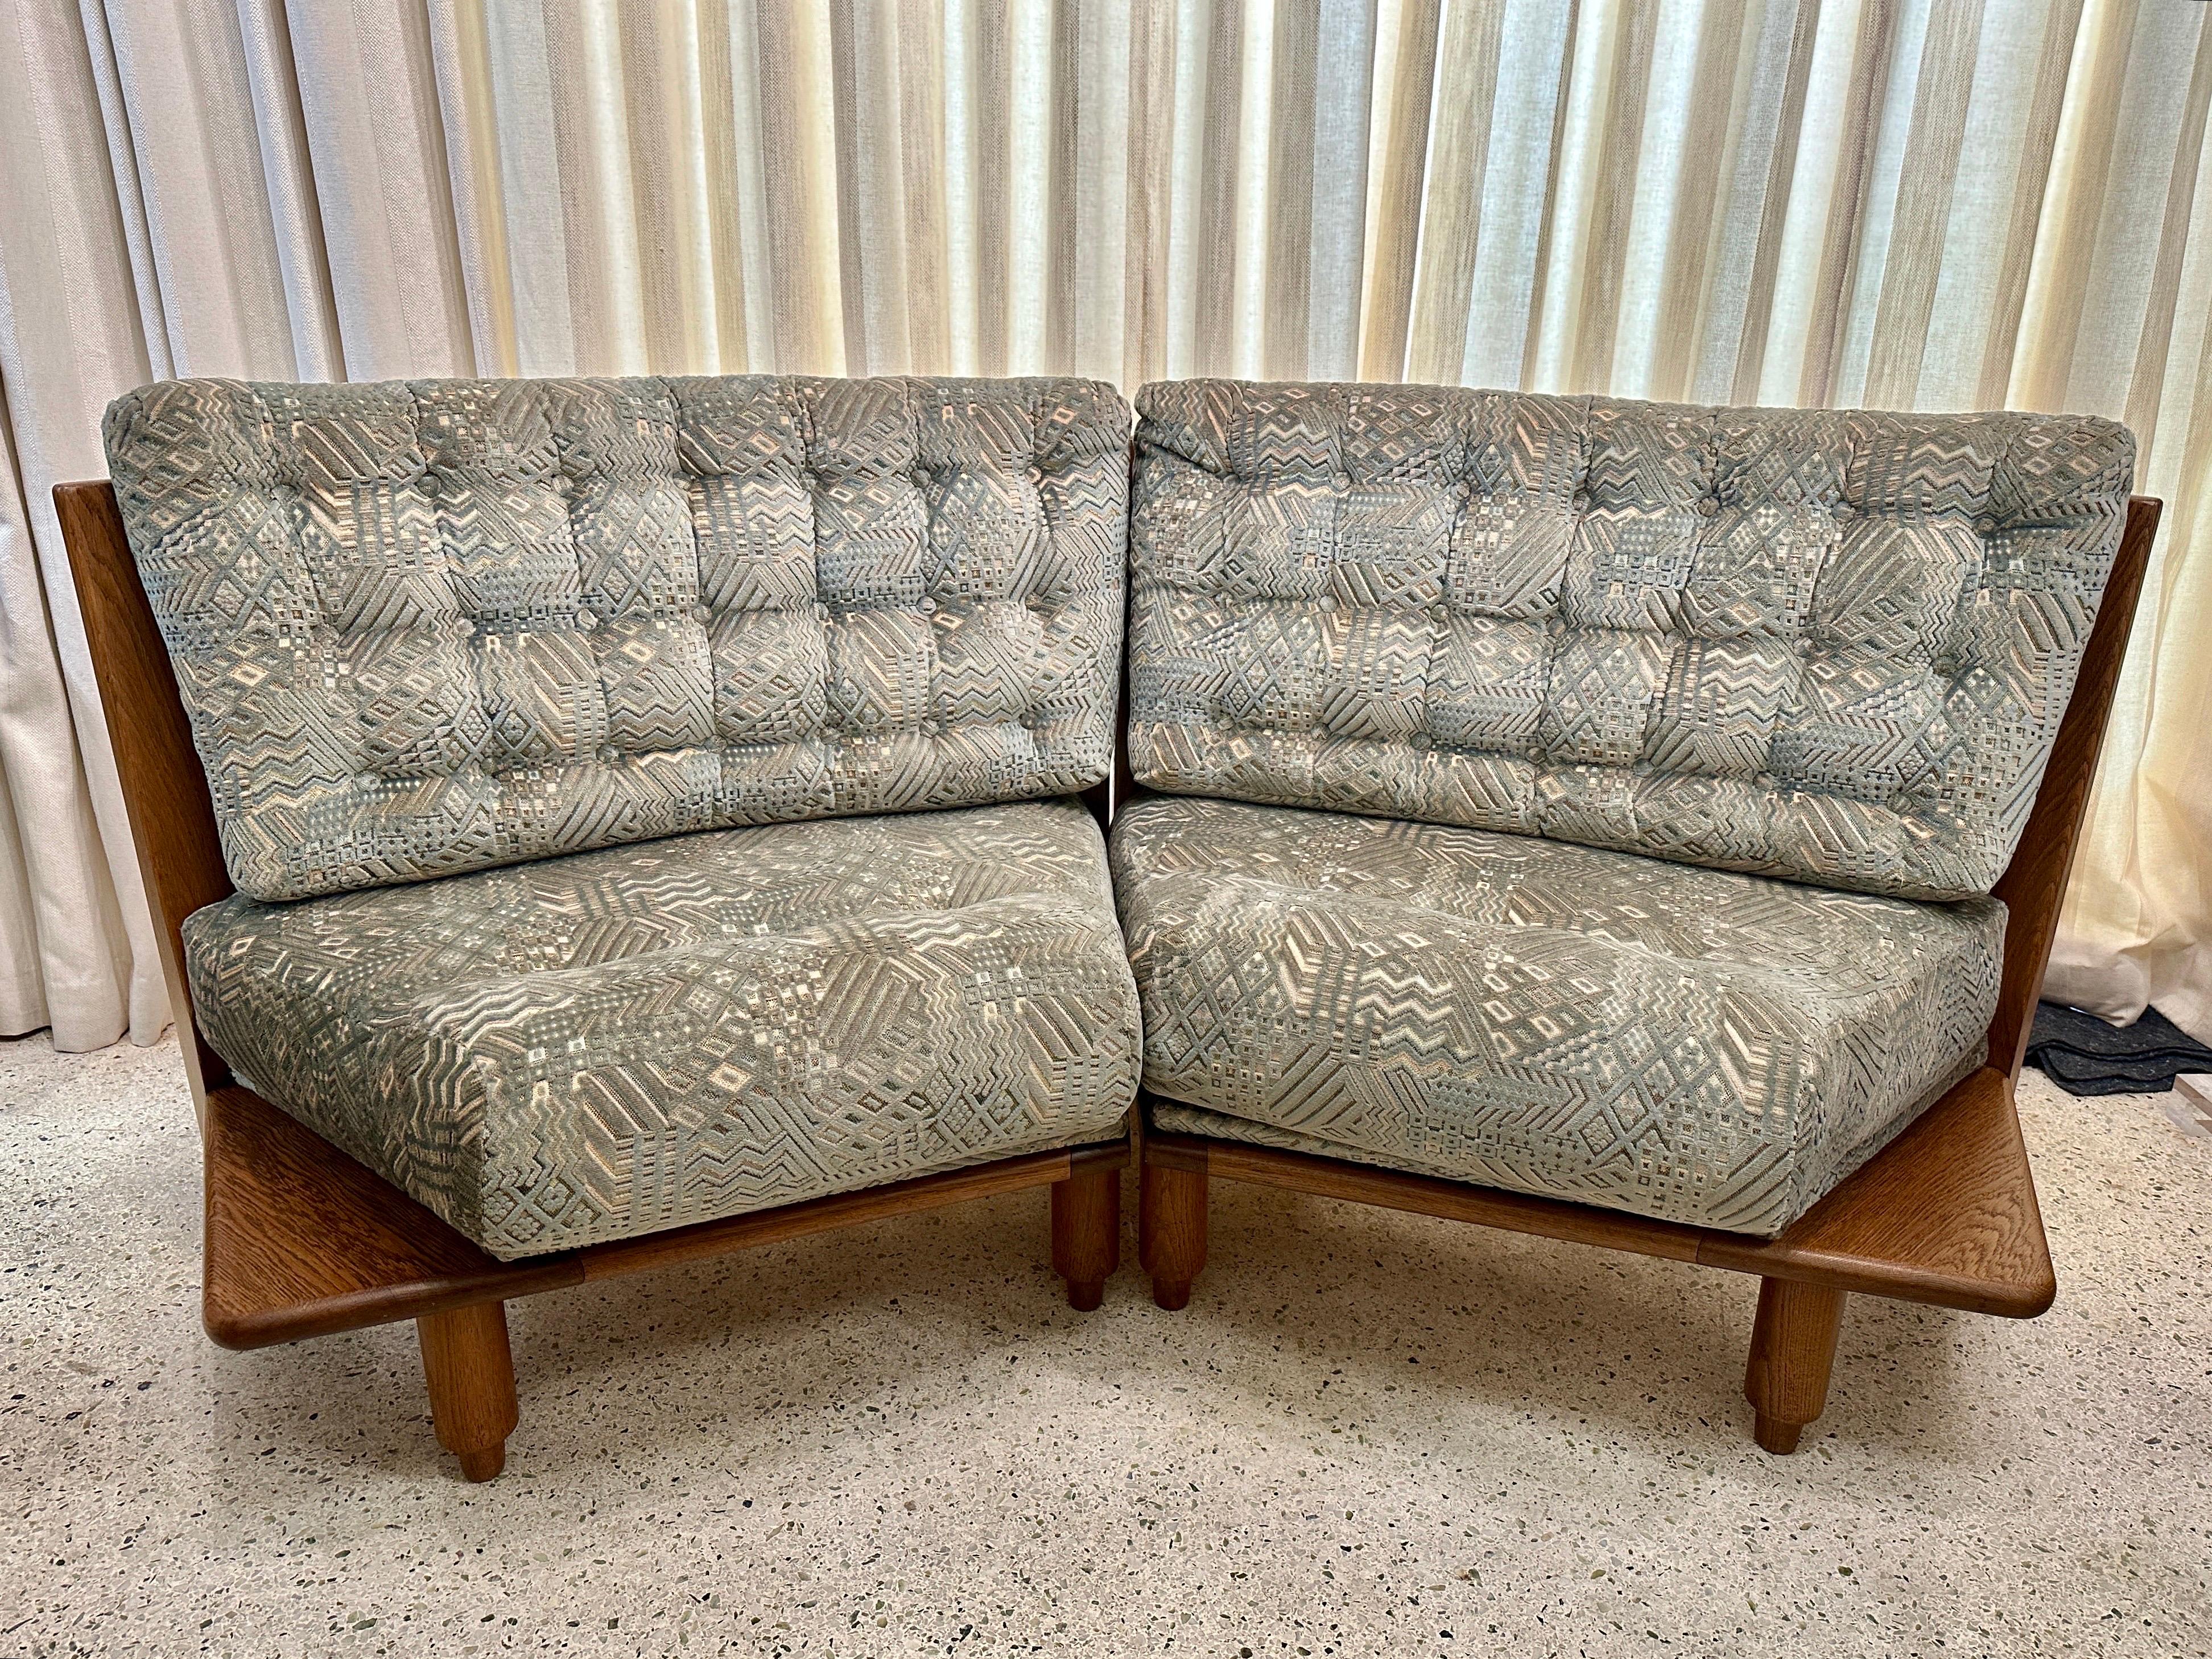 Guillerme et Chambron Sculpted Oak Two-Seater Sofa for Votre Maison, France 1960 For Sale 4